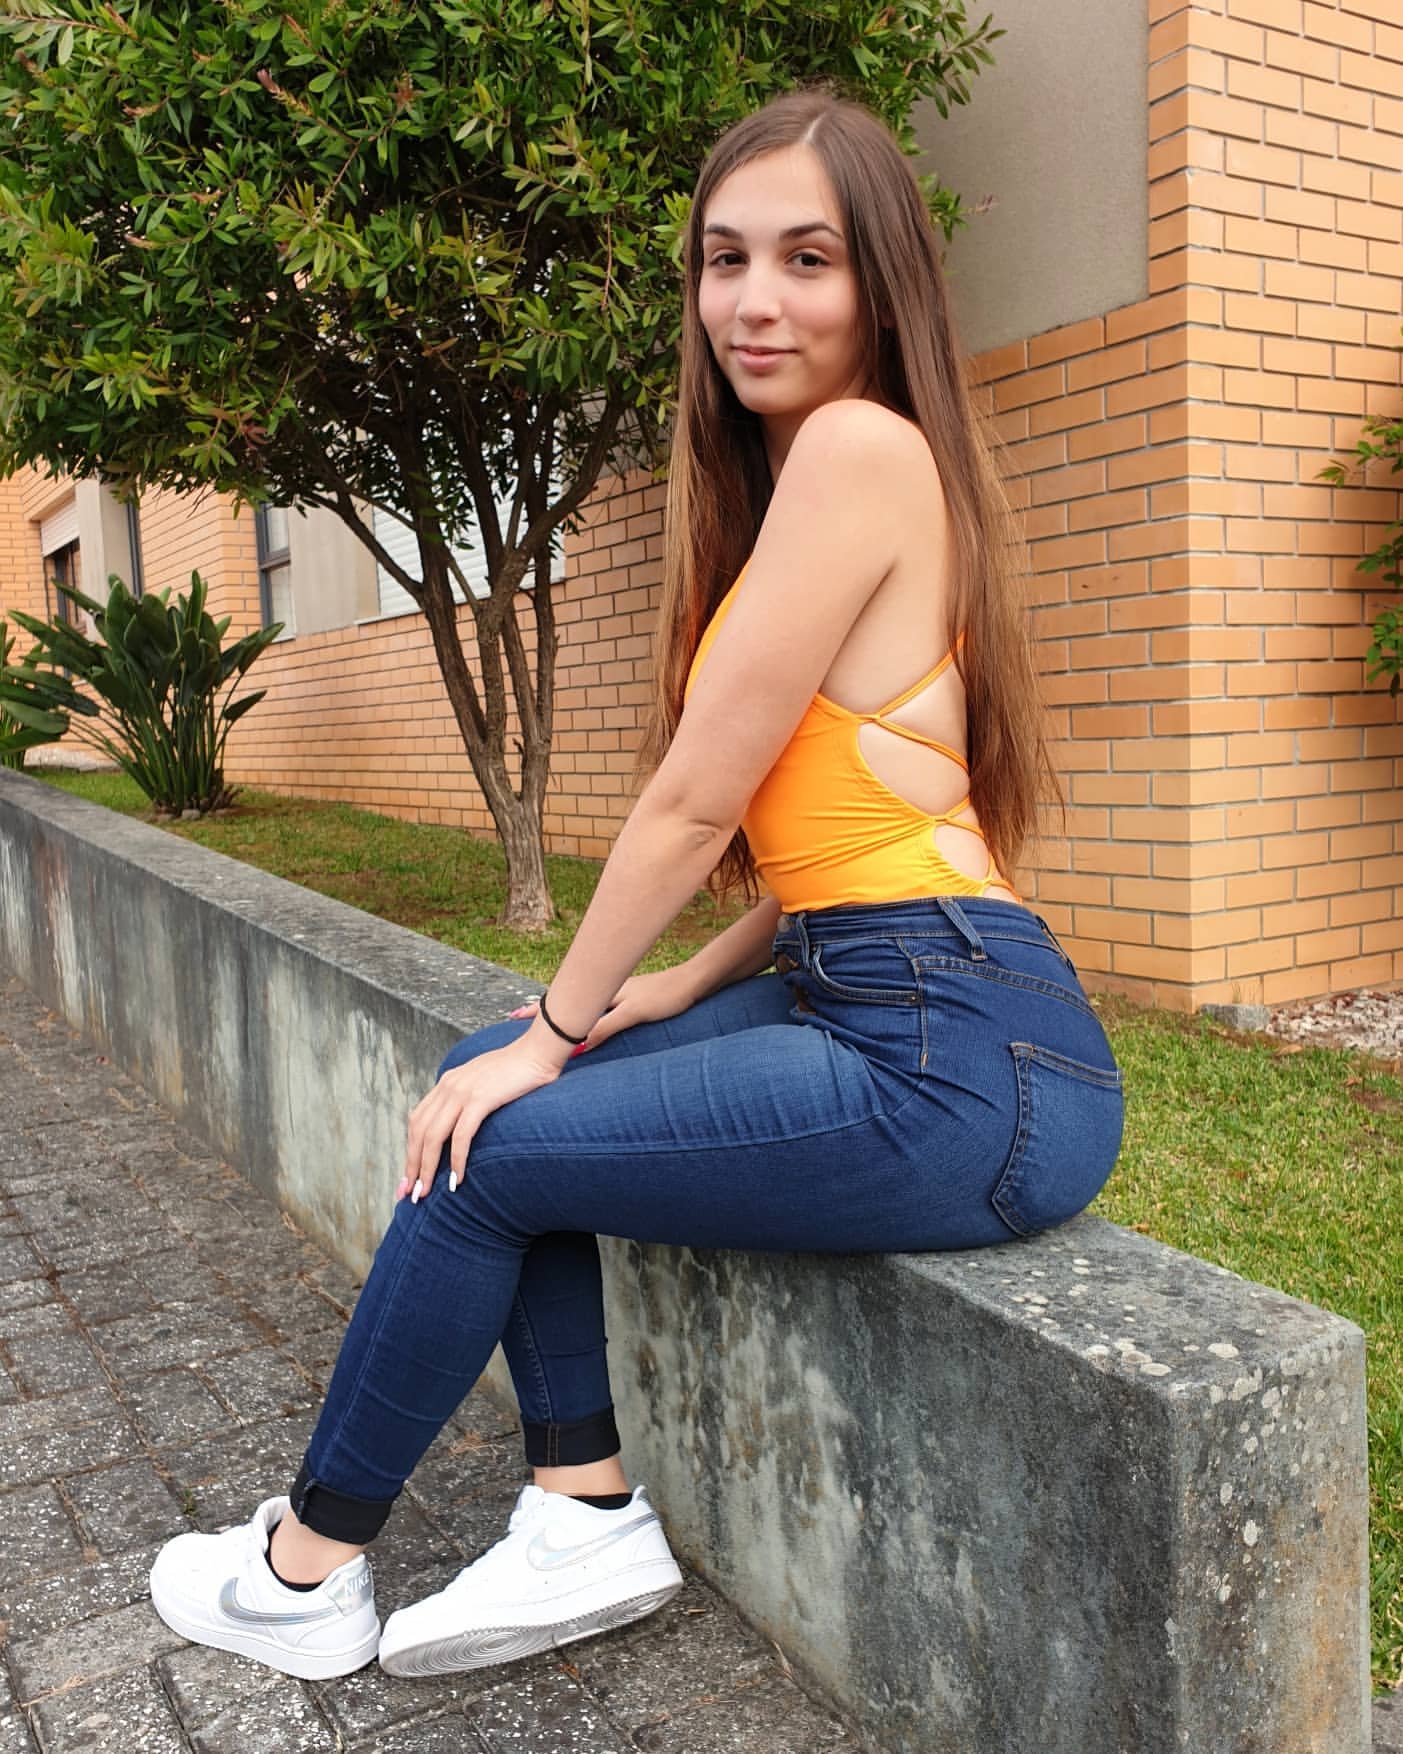 Tania Moreira @tania_m0reira Foto Pack #14689 | Profile Rate